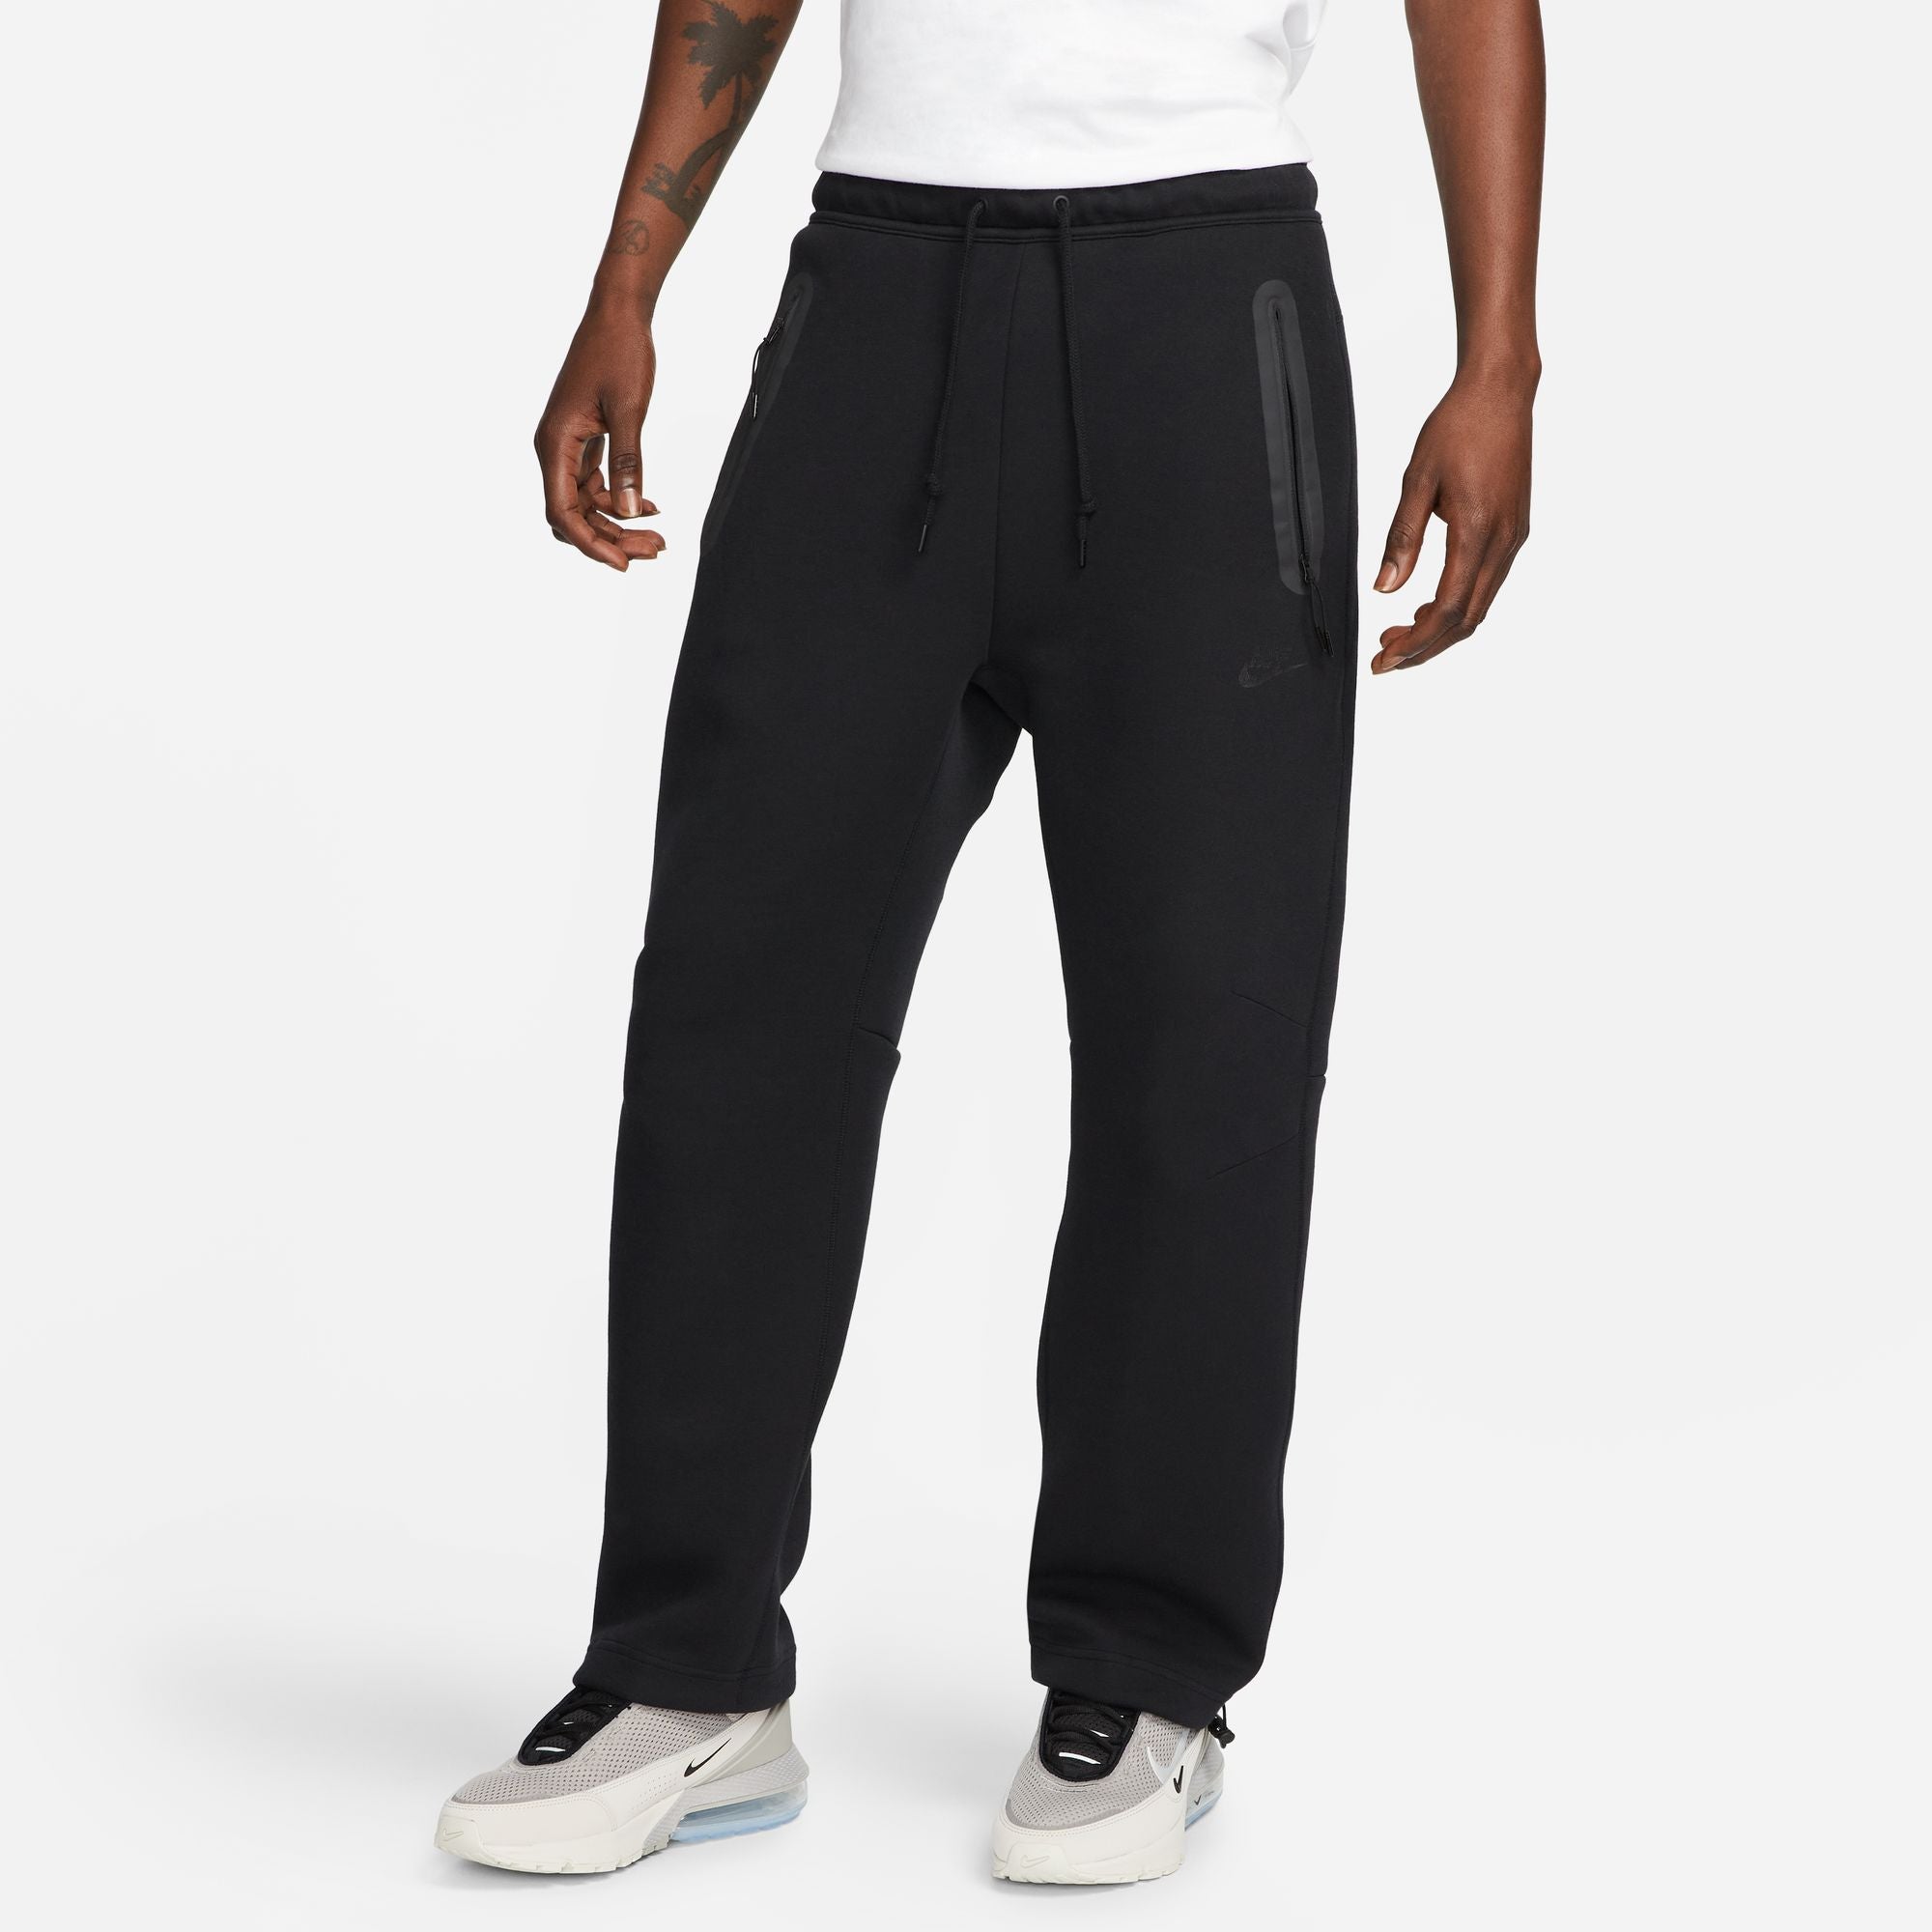 Nike Sportswear Tech Fleece Reimagined Men's Oversized Turtleneck Sweatshirt